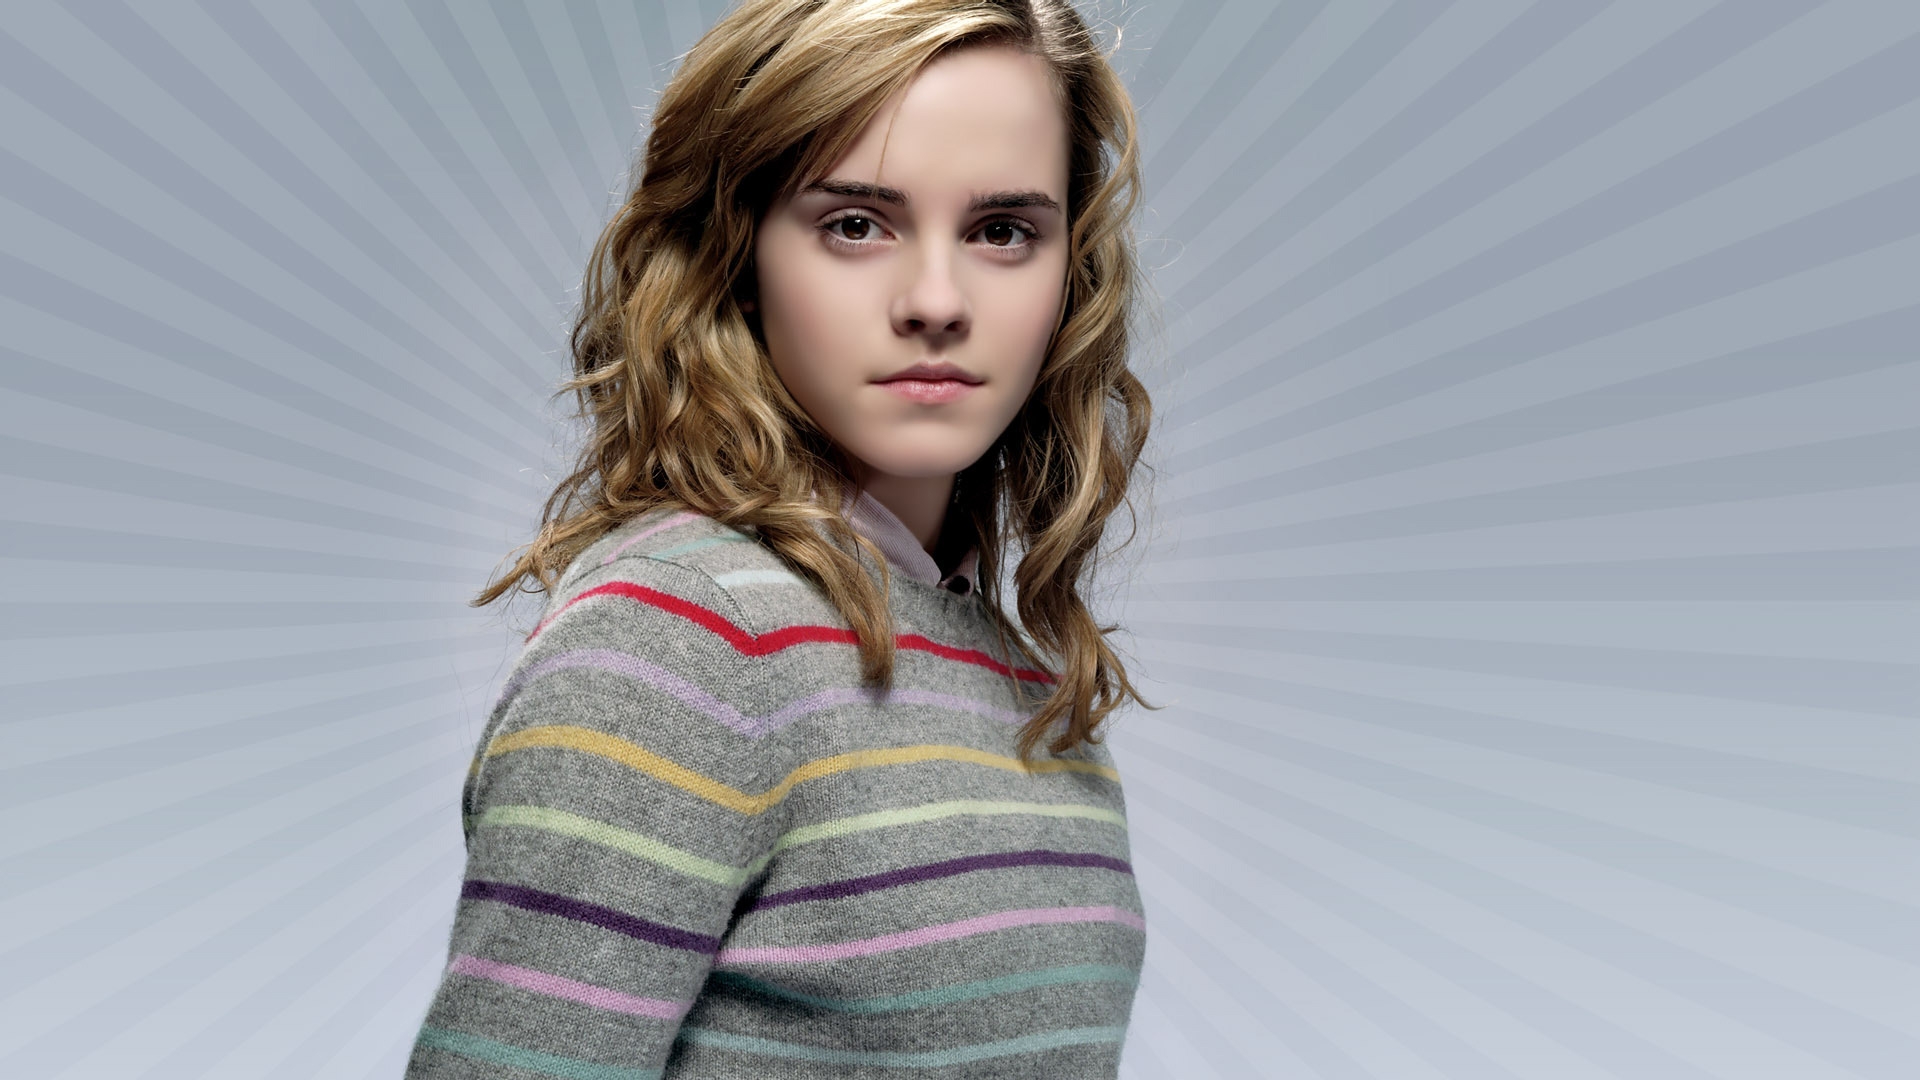 Beautiful Emma Watson 1920 x 1080 HDTV 1080p Wallpaper